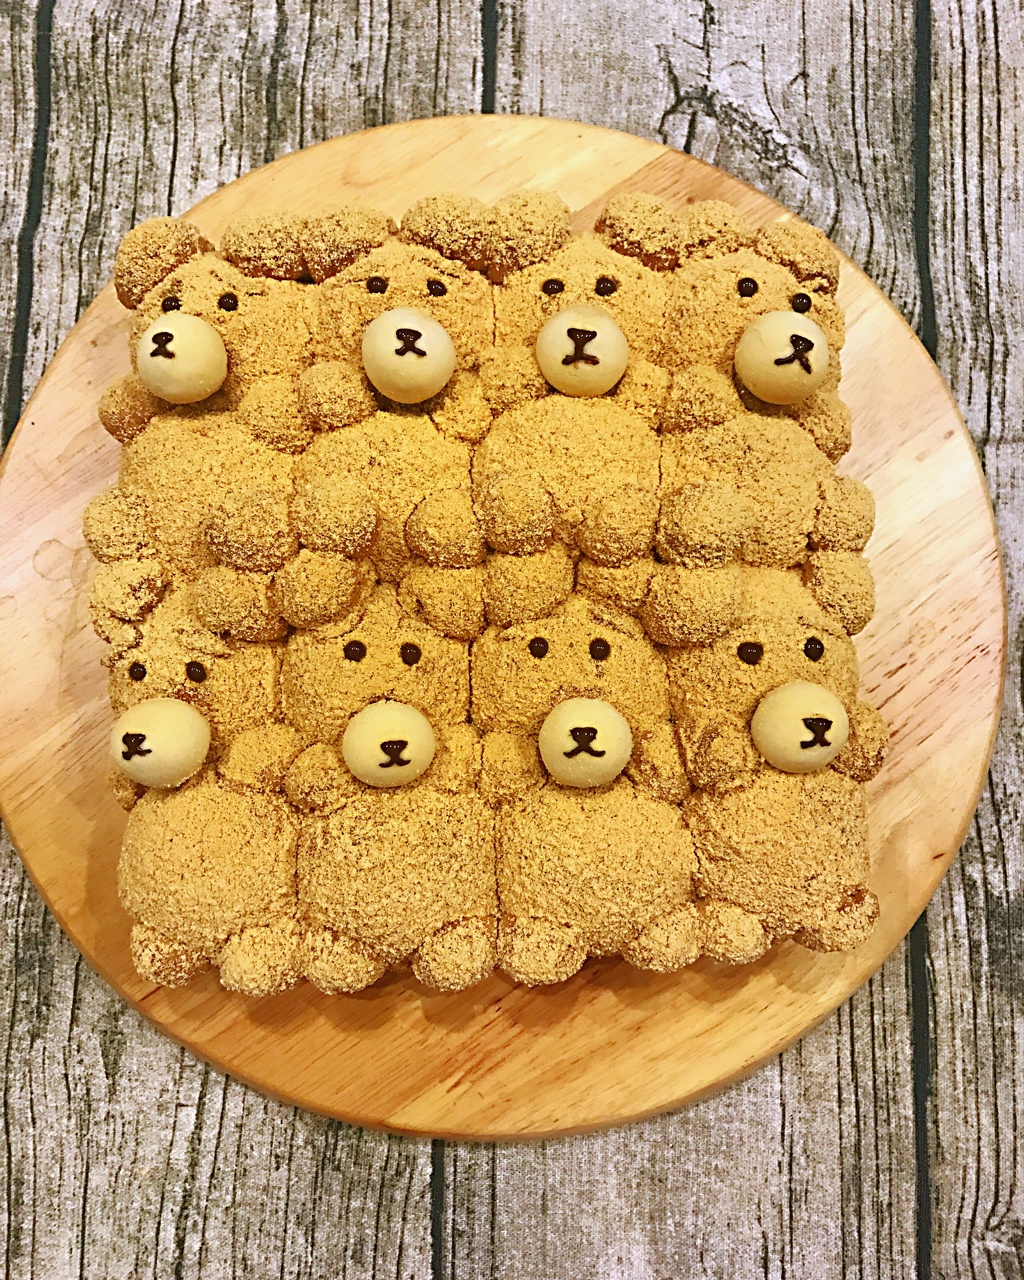 萌你一脸的泰迪熊挤挤面包